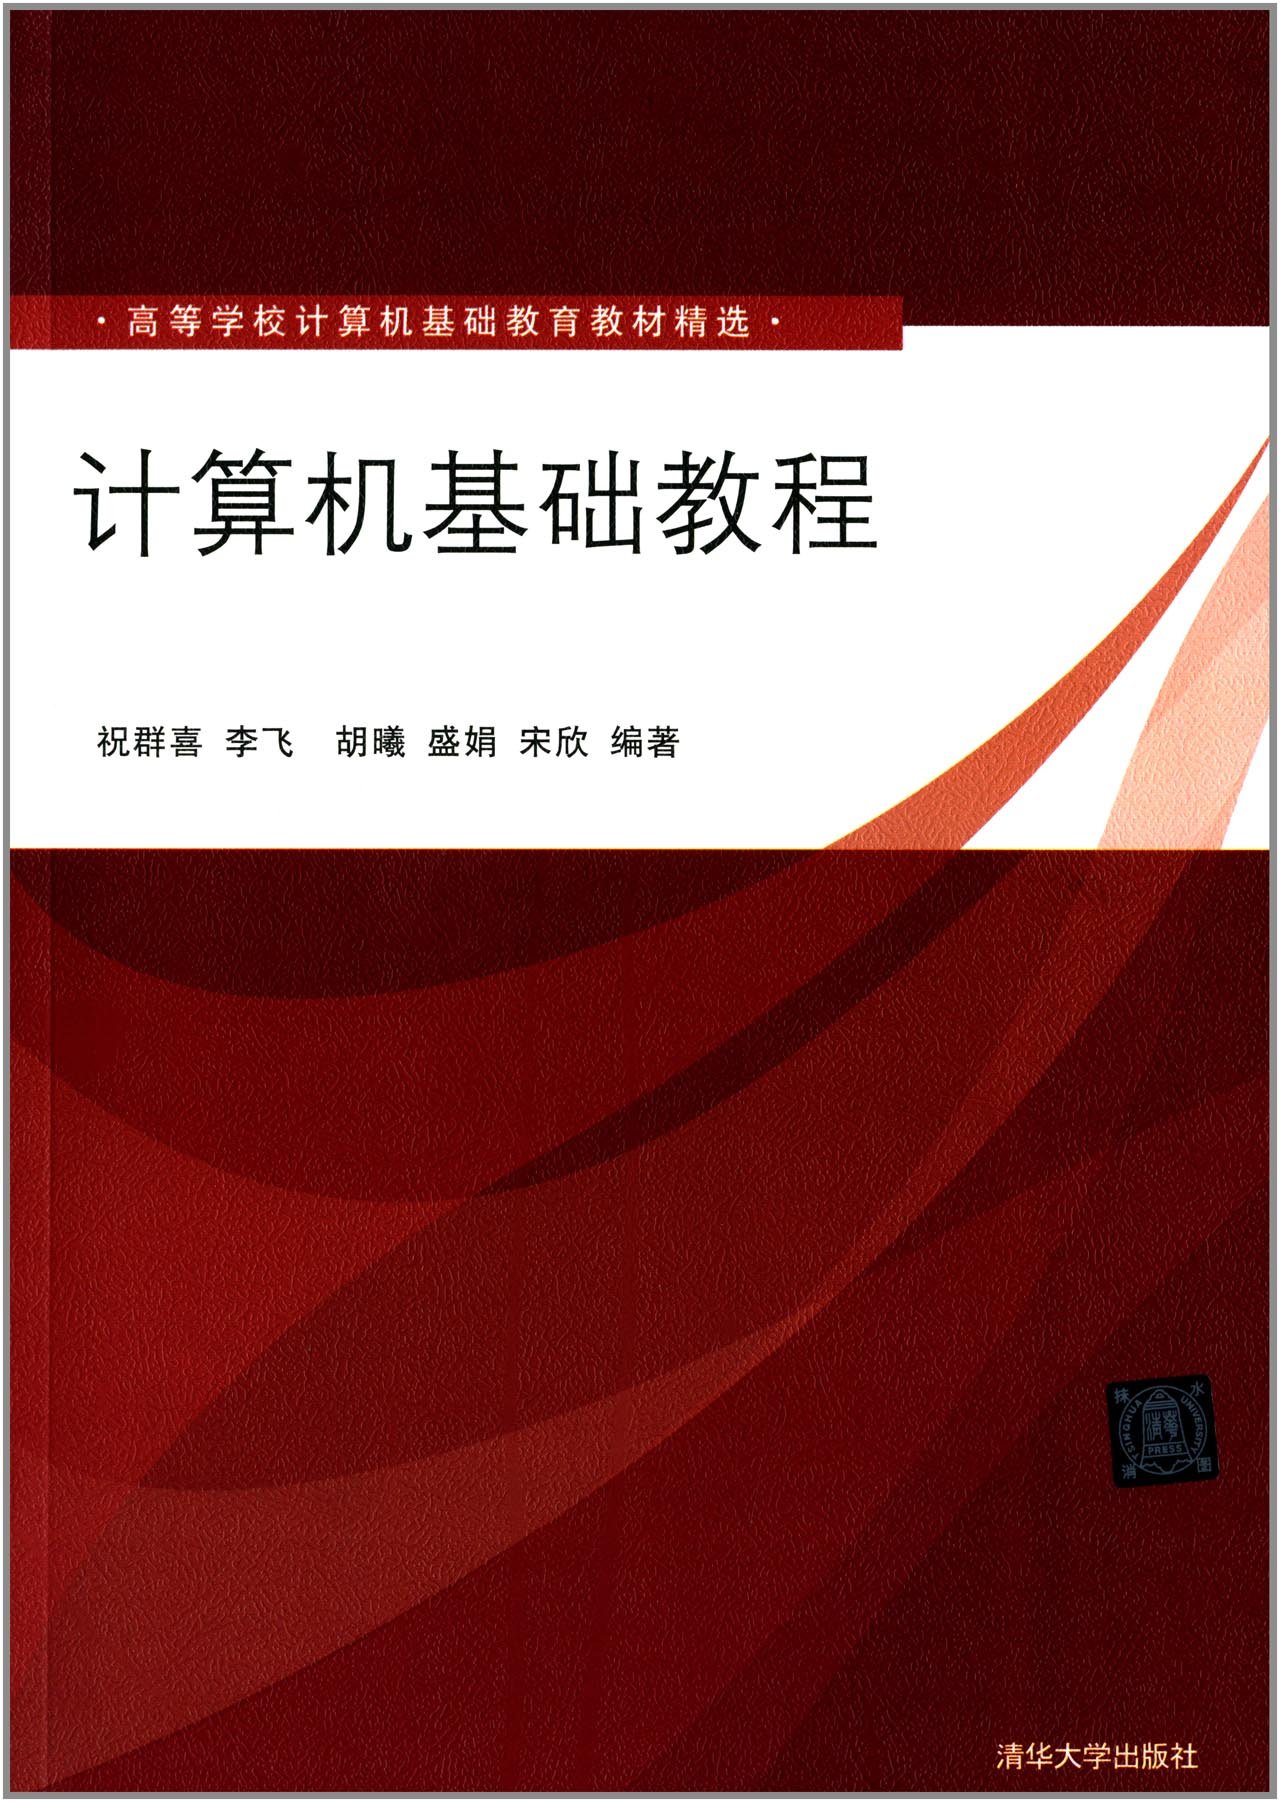 計算機基礎教程(2014年清華大學出版社出版的圖書)